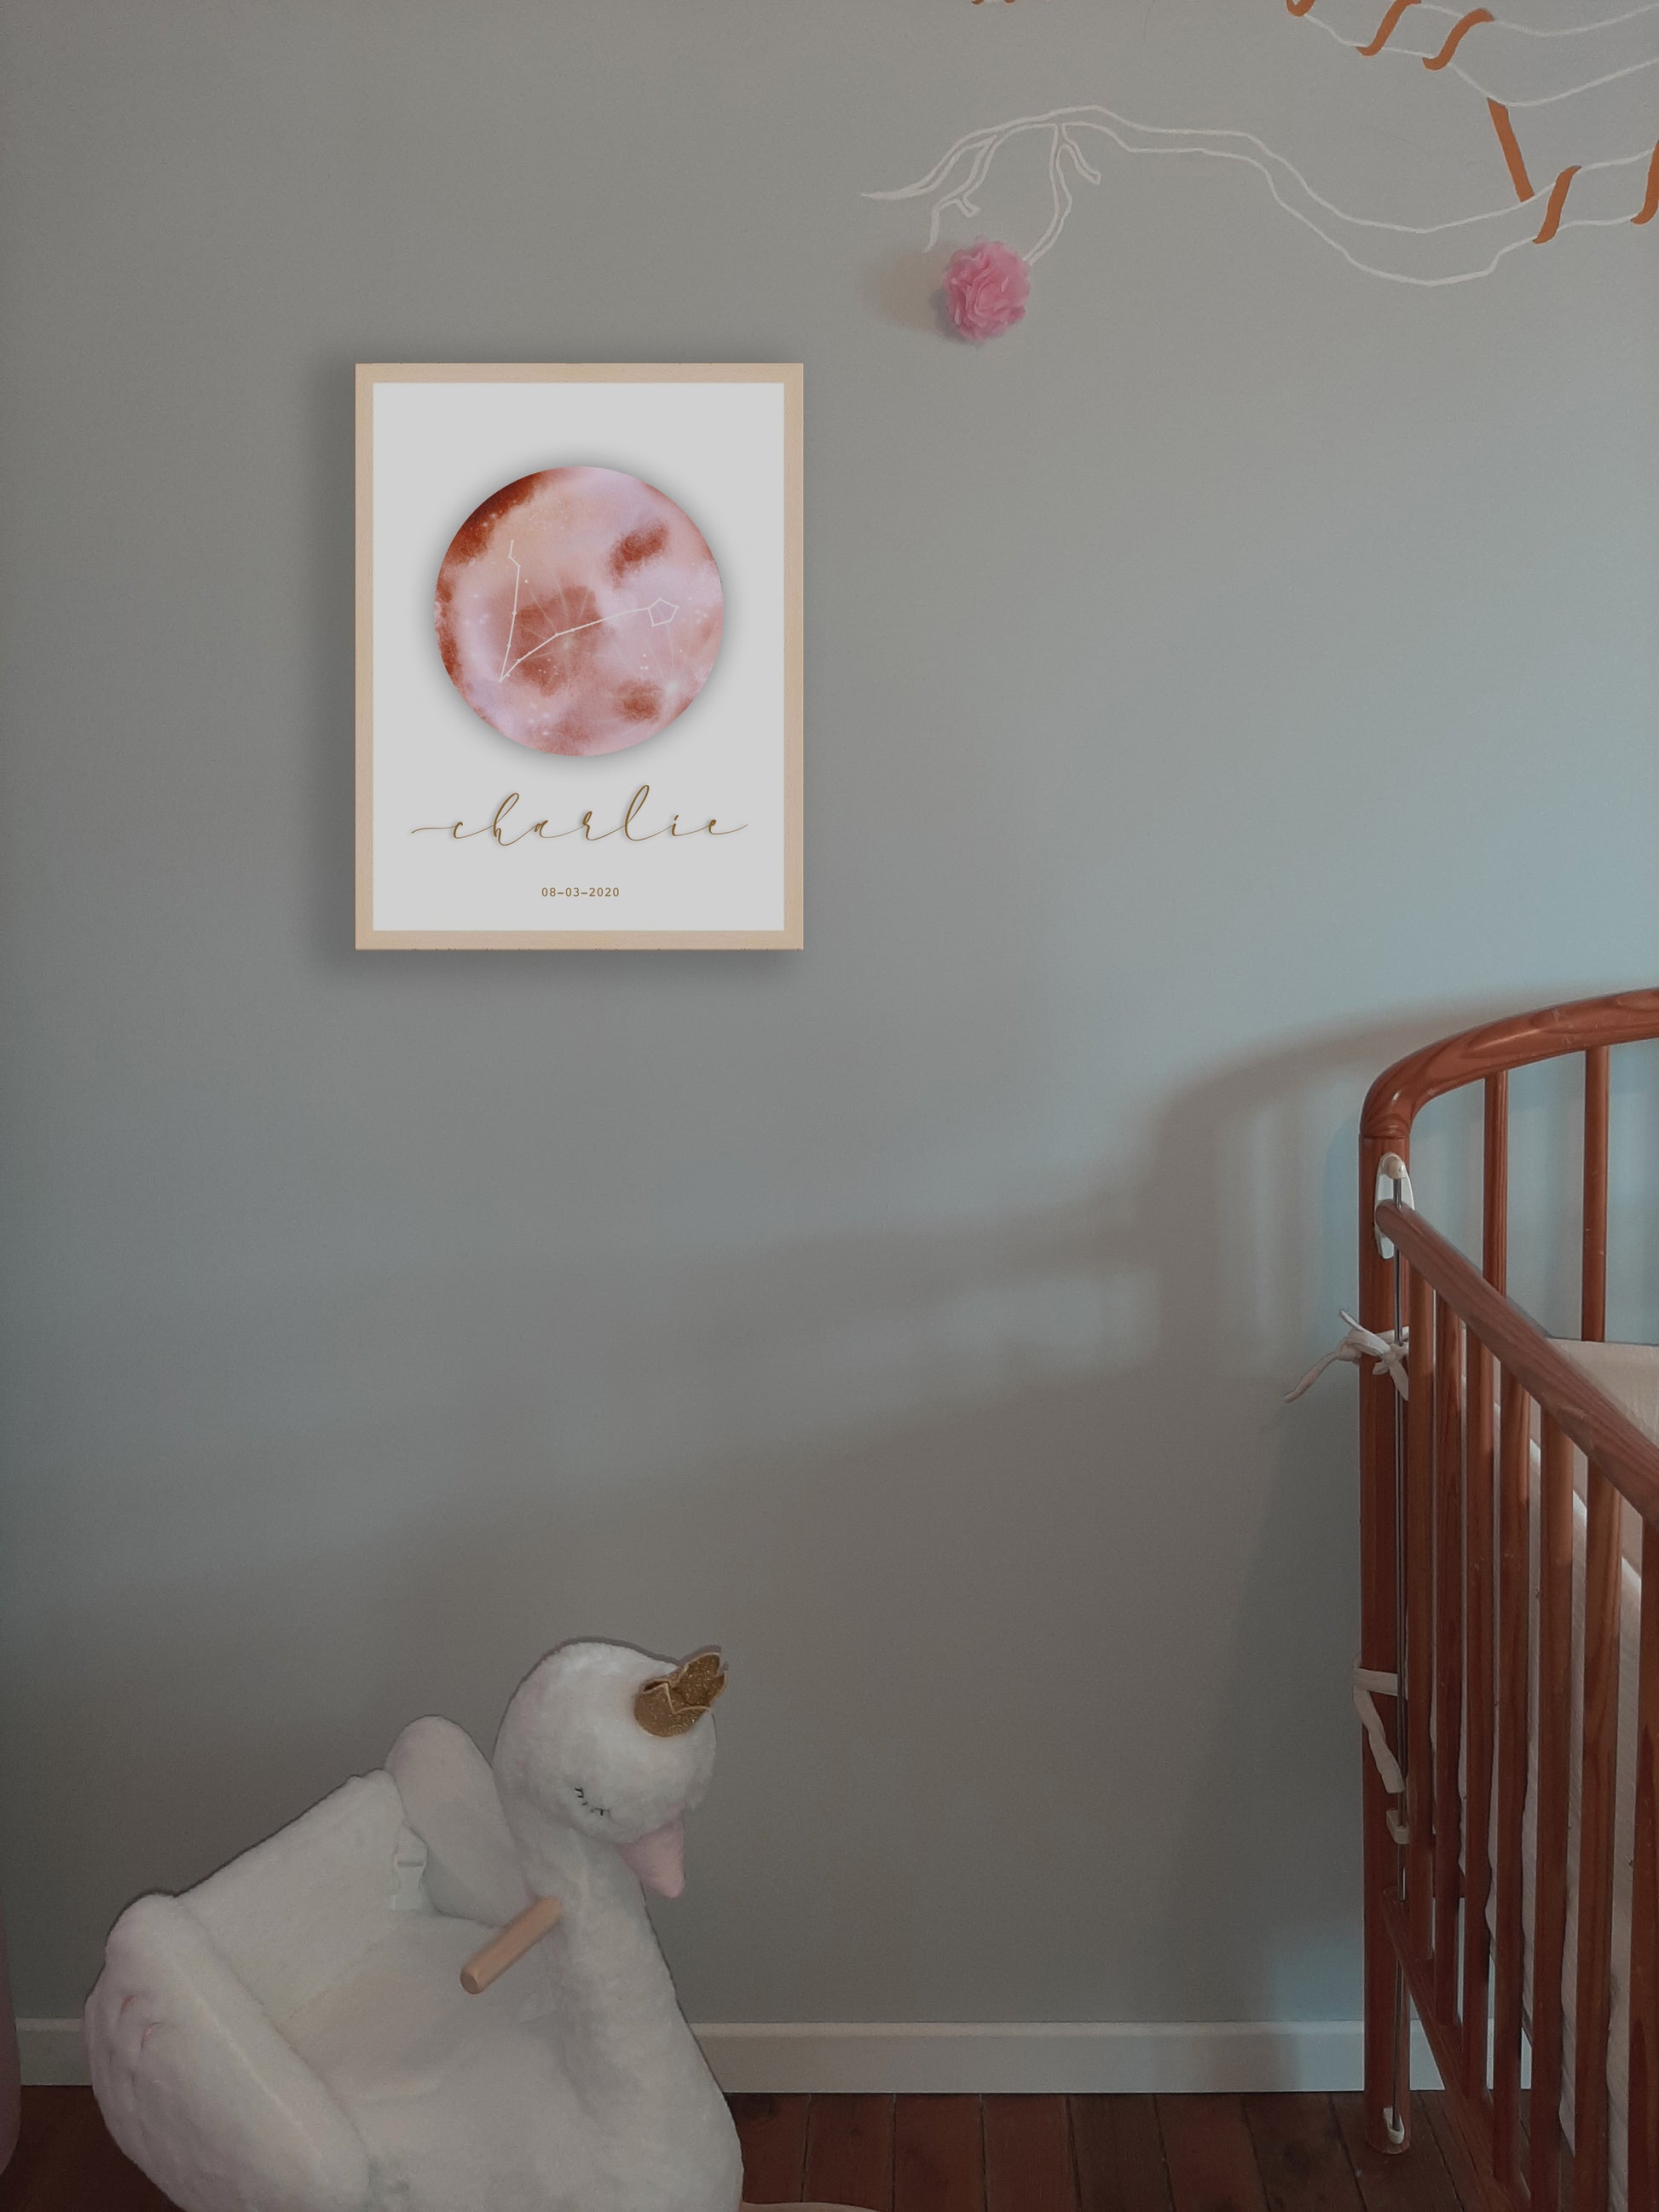 Lune astro rose dans une chambre de bébé. Les lunes astro La p'tite Ourse sont créées à partir d'une aquarelle numérique.